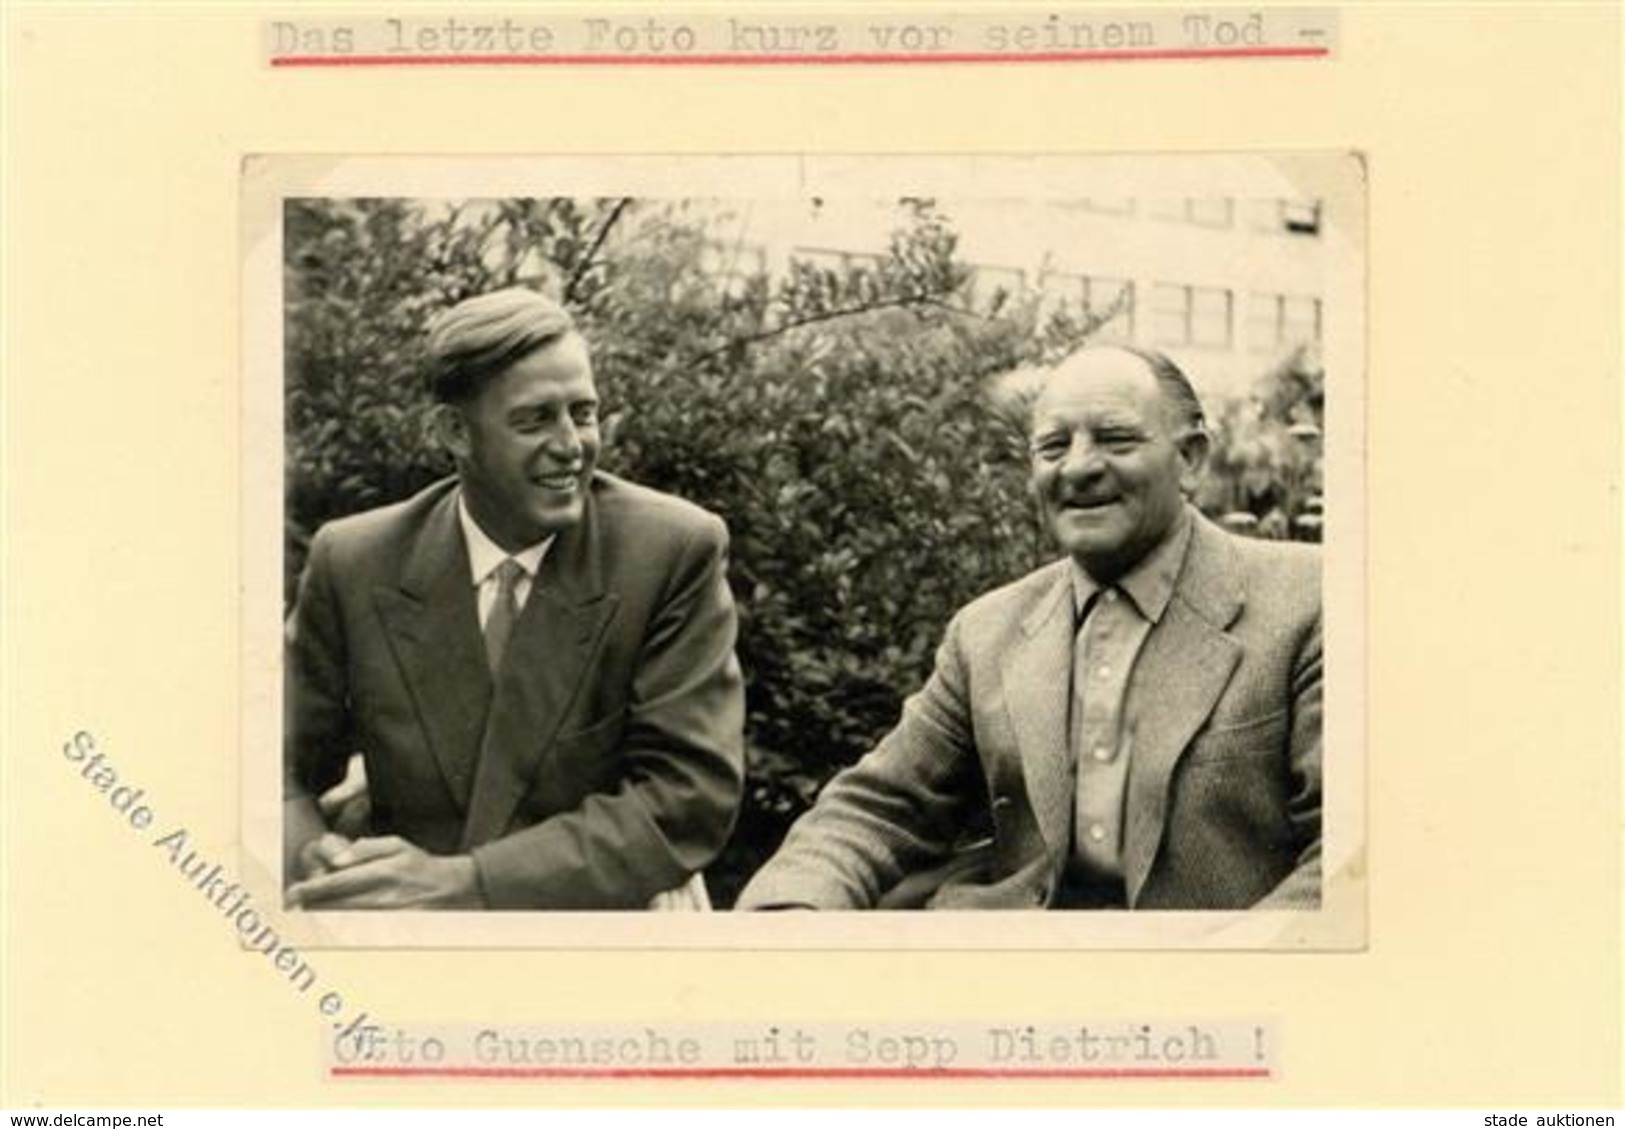 SS WK II - Foto -das Letzte Foto Kurz Vor Seinem Tod - Otto GÜSCHE Mit Sepp DIETRICH I - Guerra 1939-45